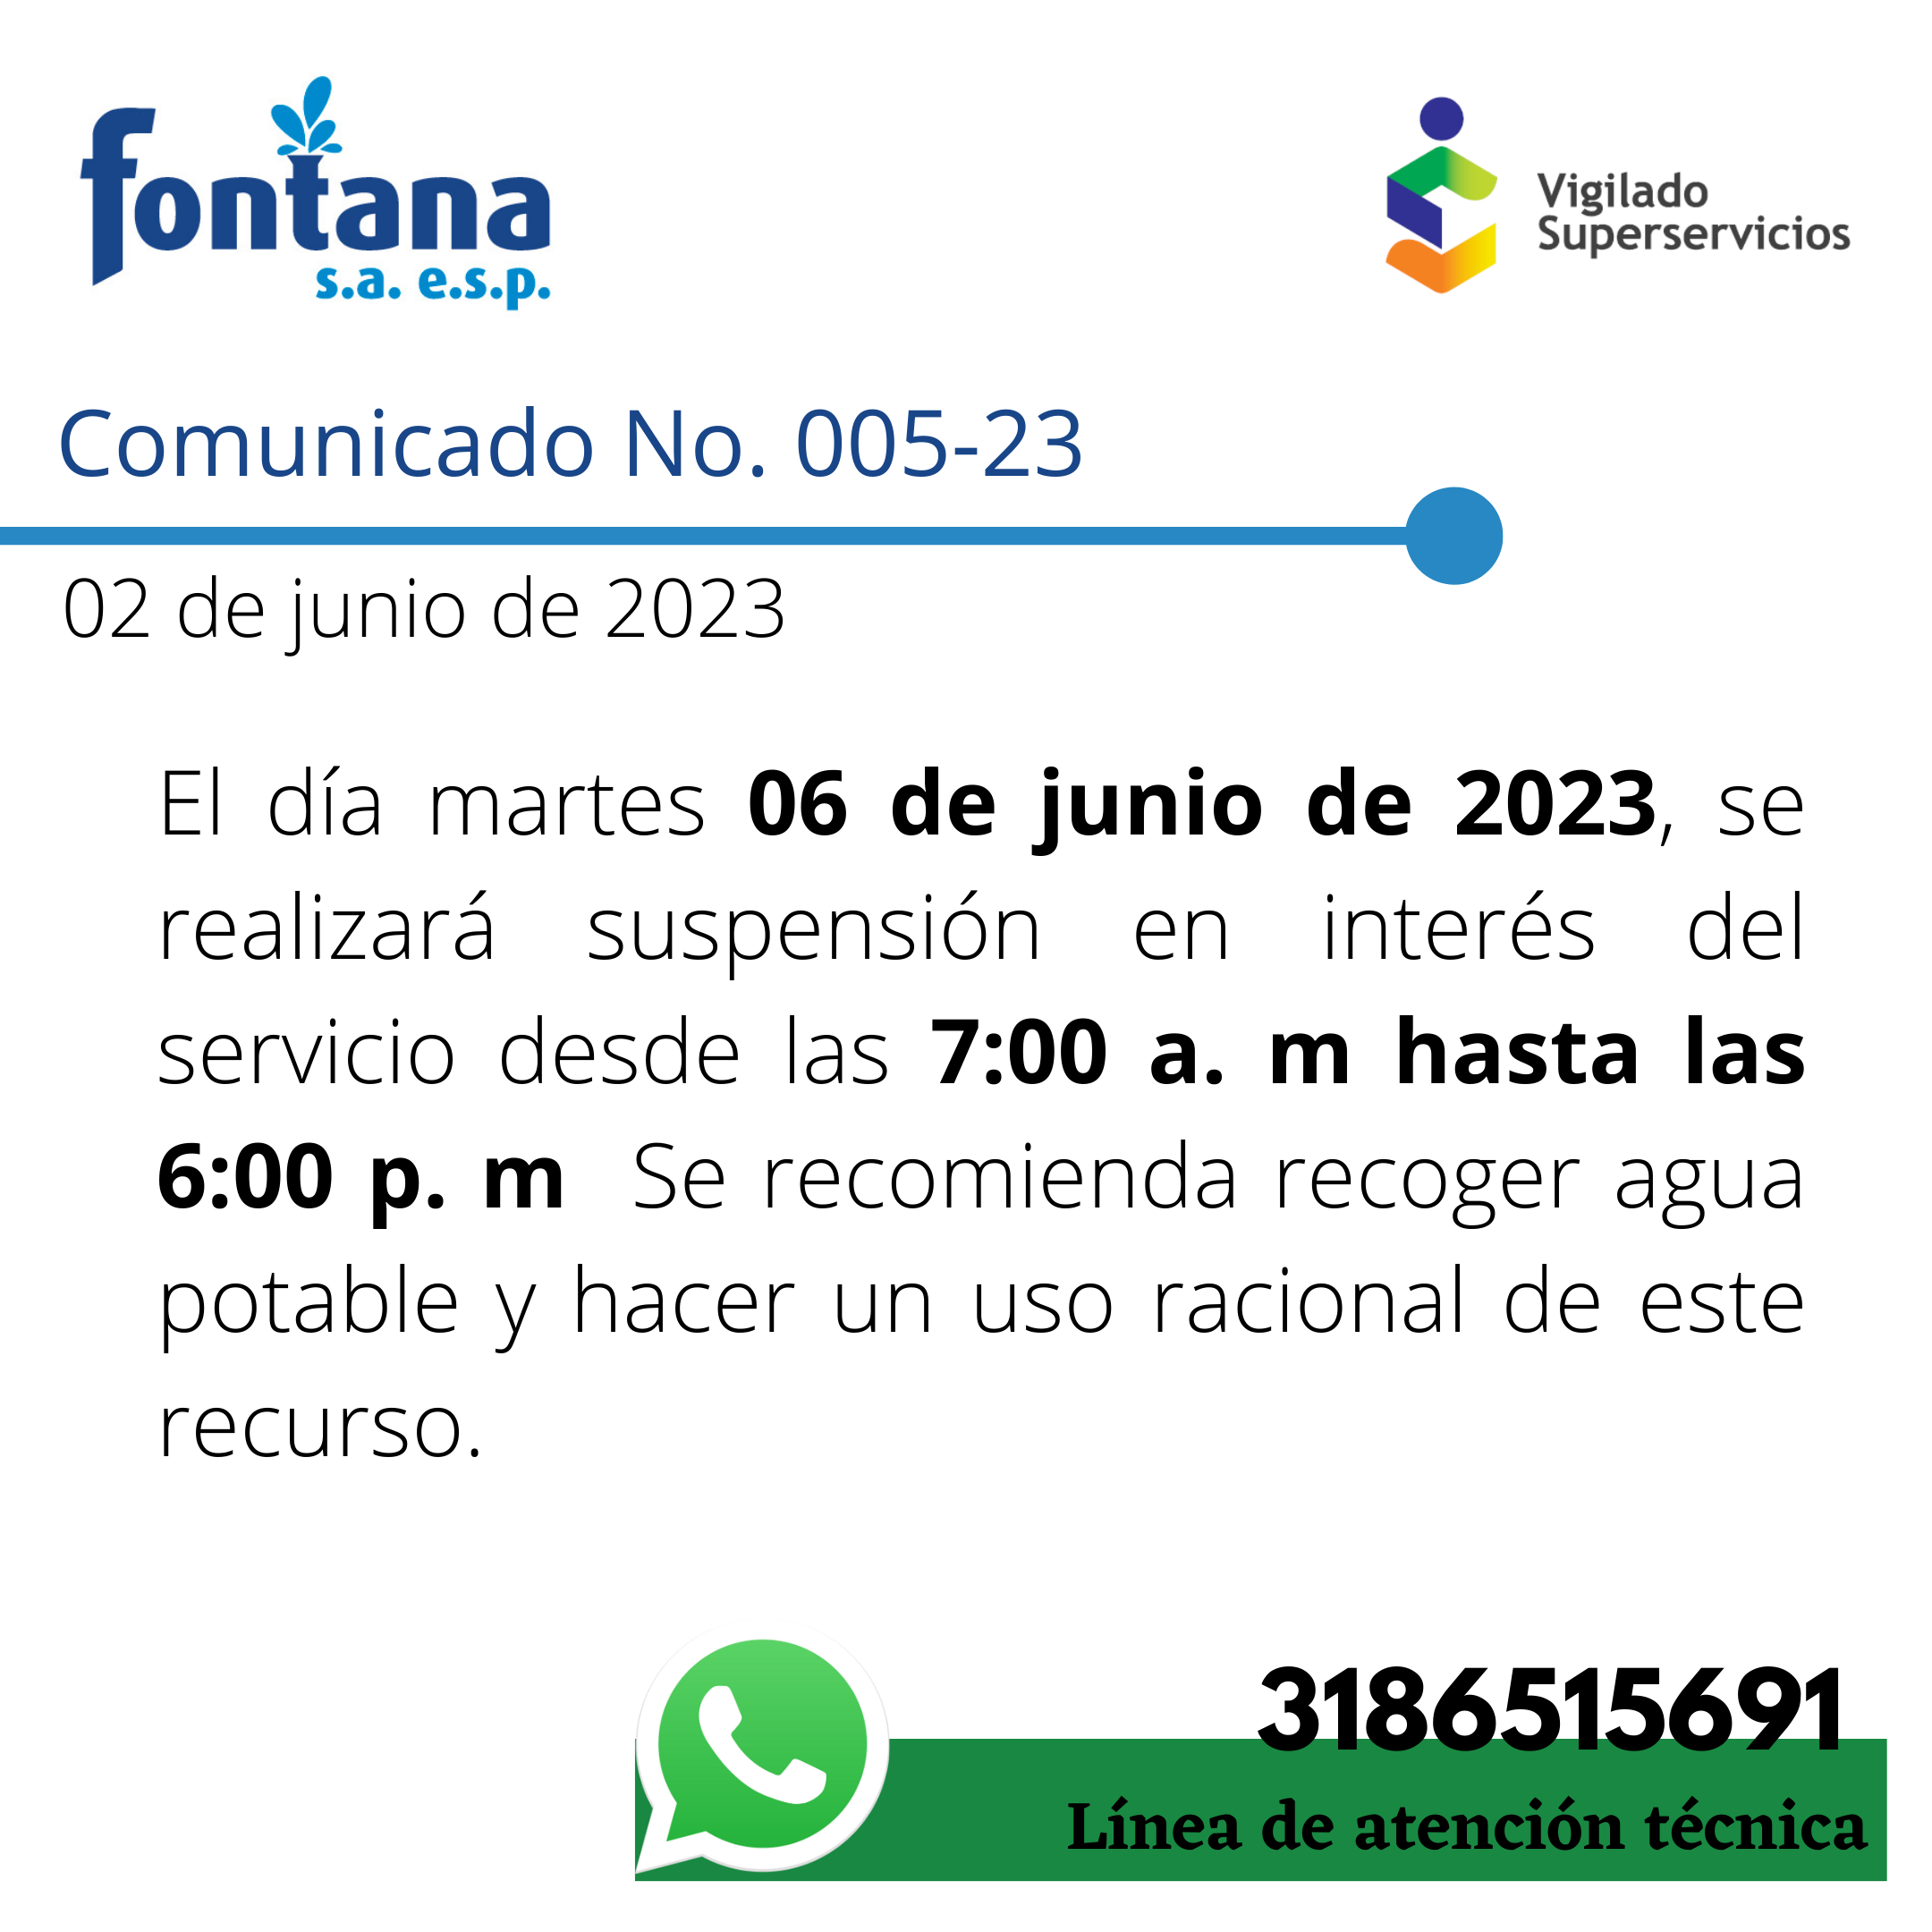 Comunicado No. 005-23 Suspension (02-06-2023)